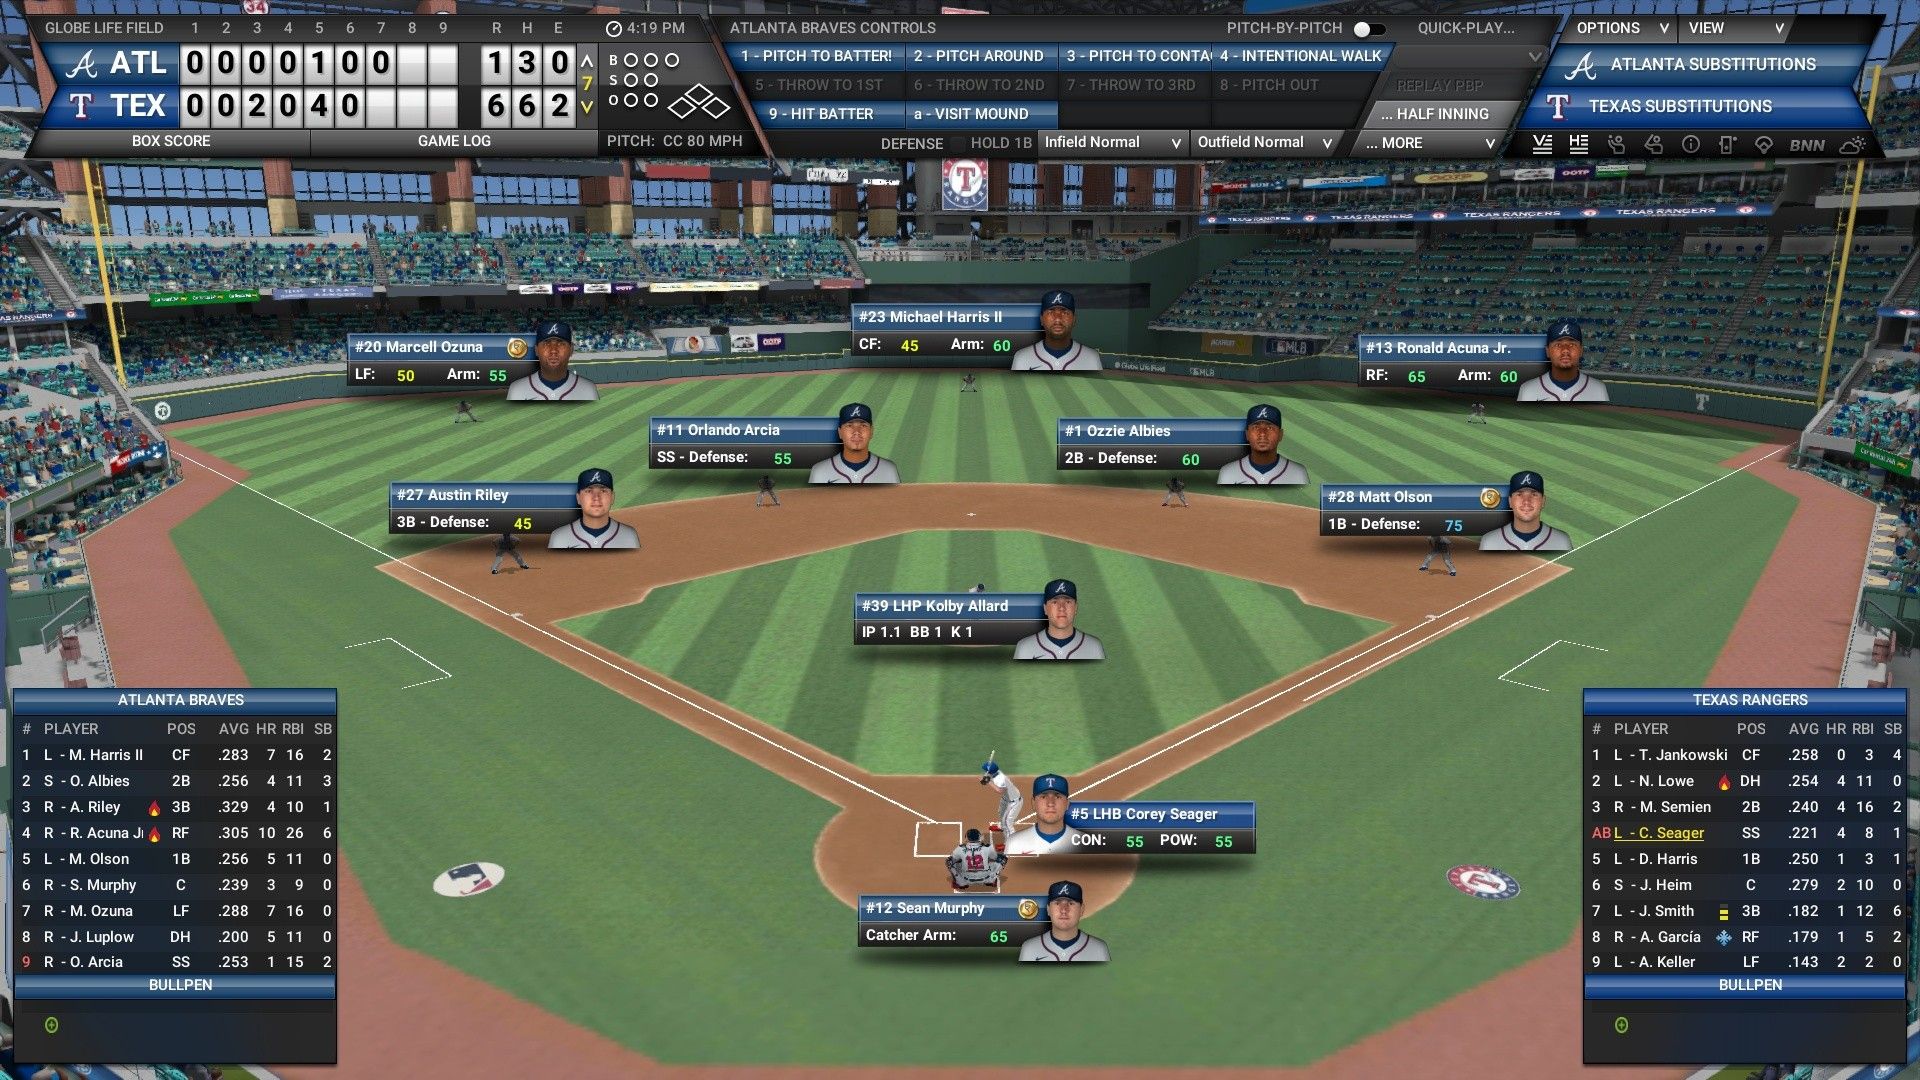 OOTP Baseball Management Screen for the Atlanta Braves.